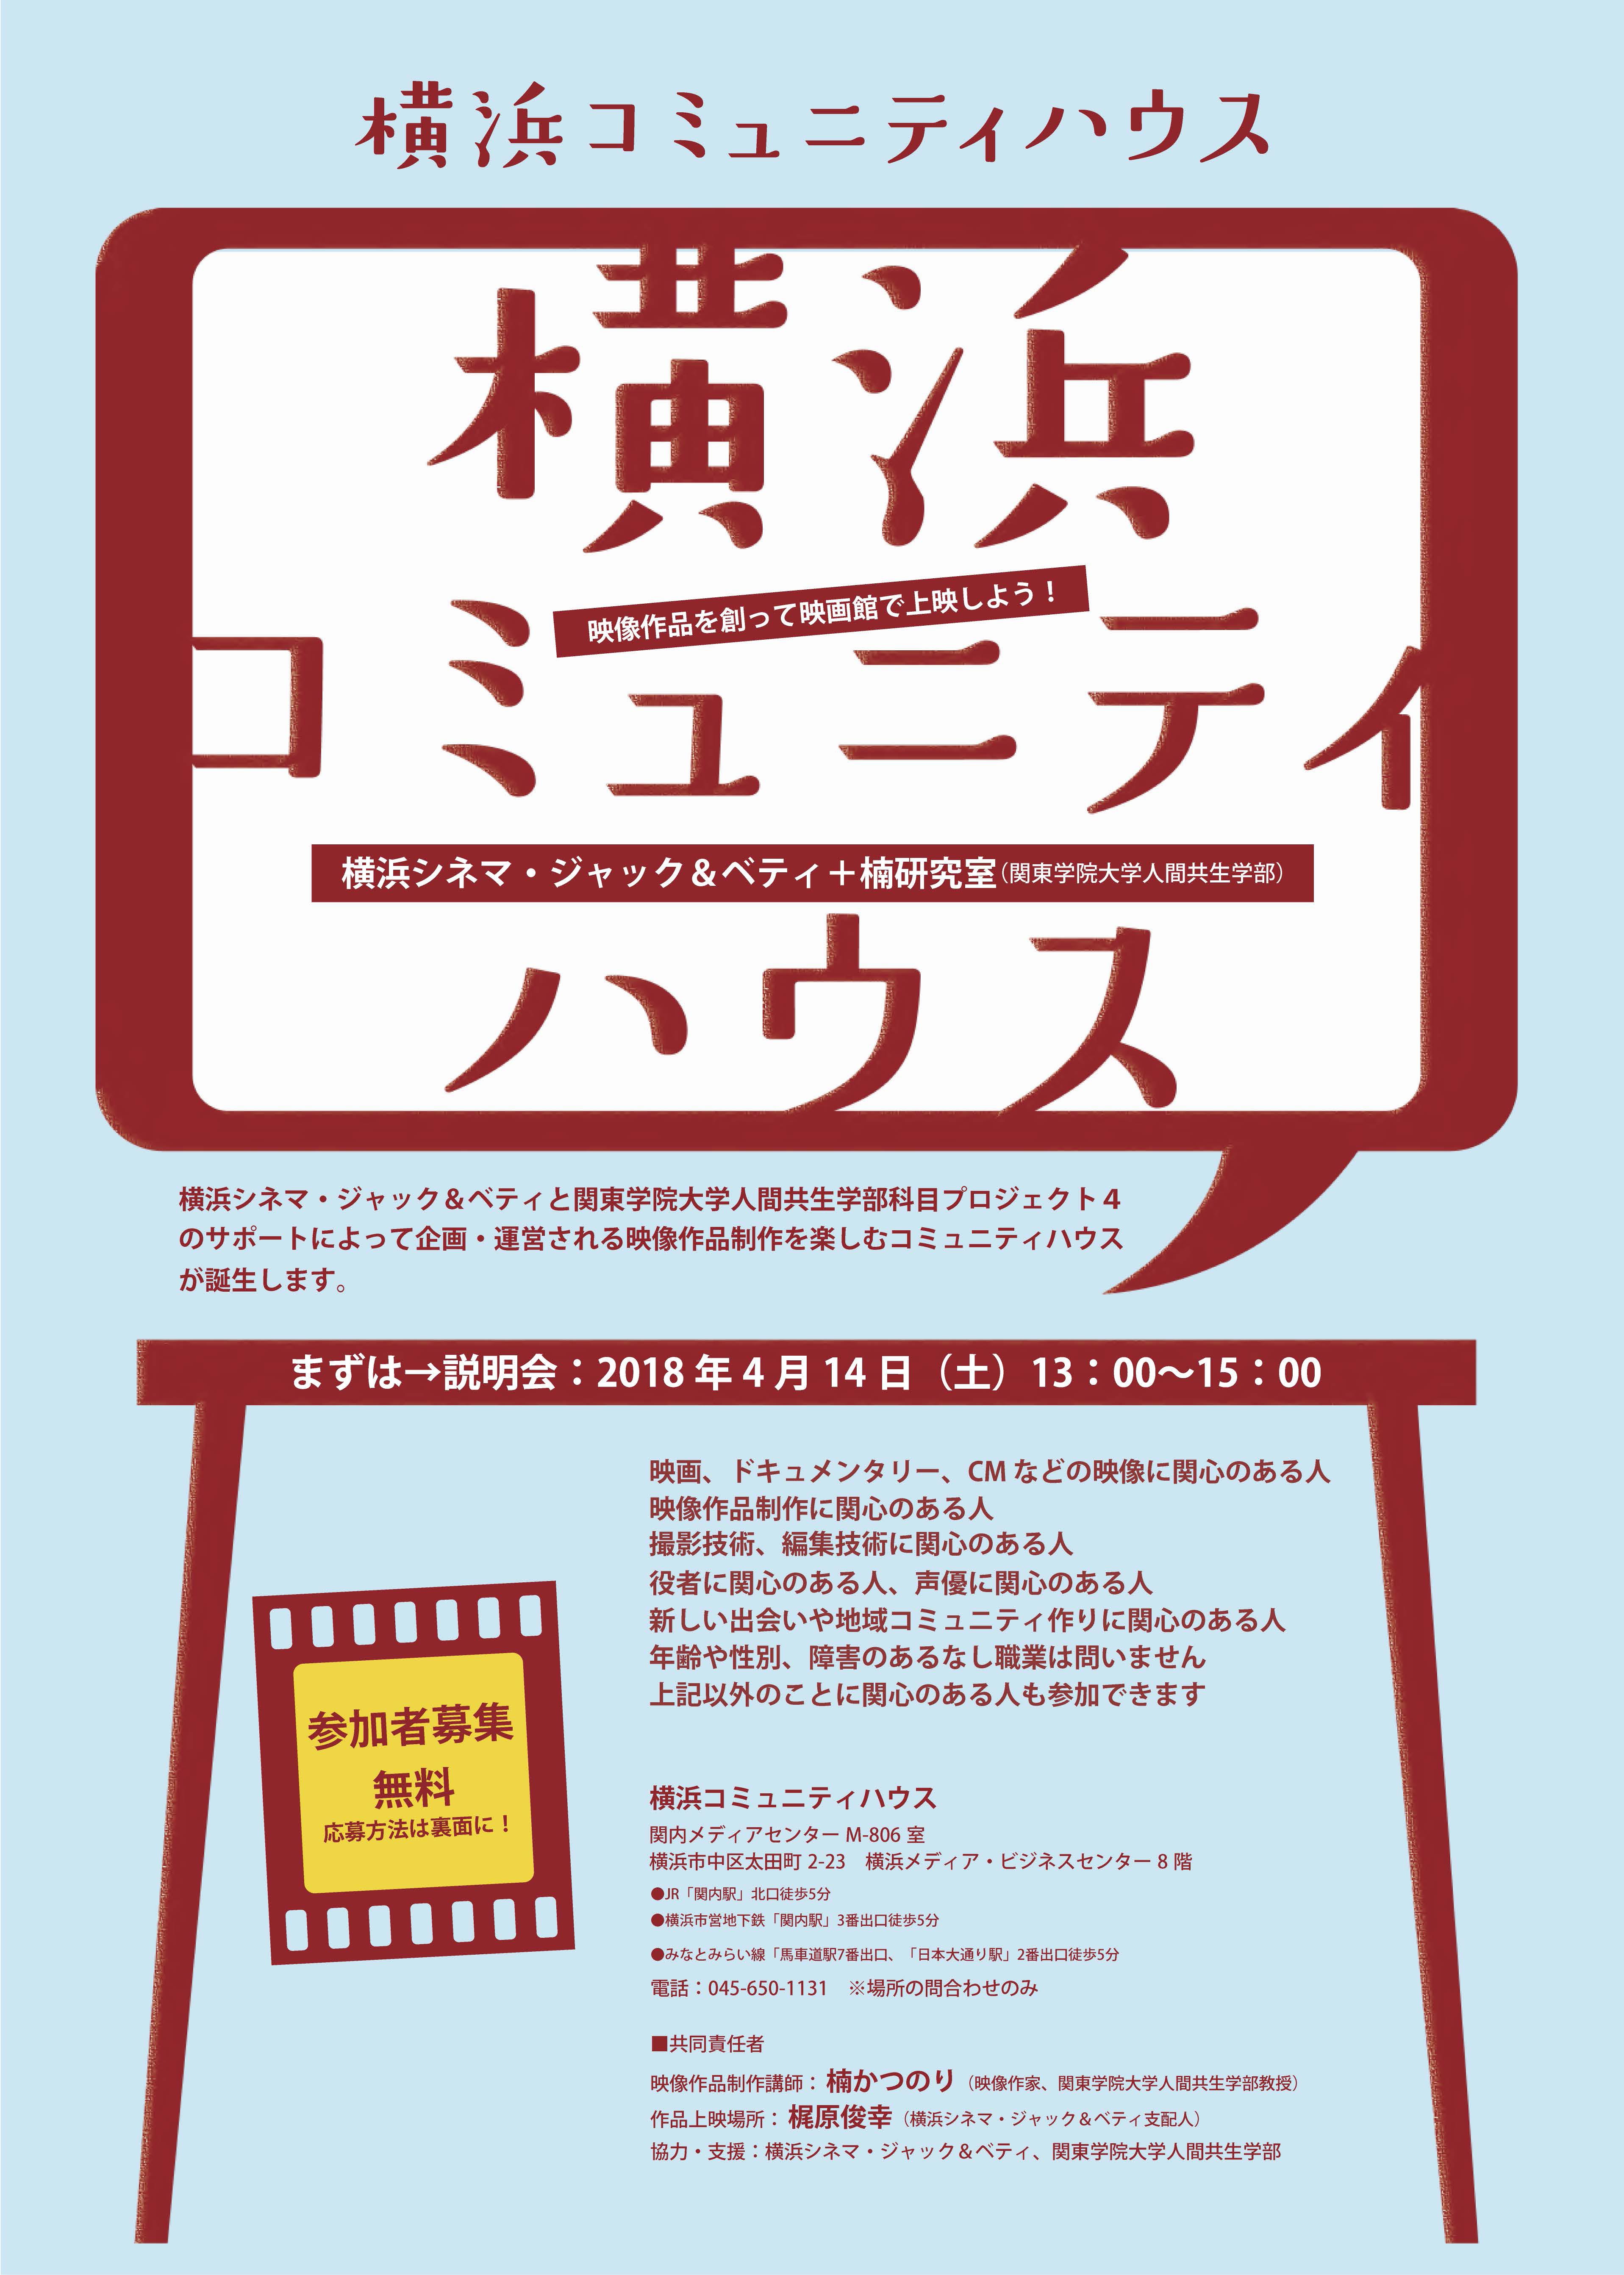 映像作品を創って映画館で上映しよう 横浜コミュニティハウス 誕生 シネマ ジャック ベティブログ